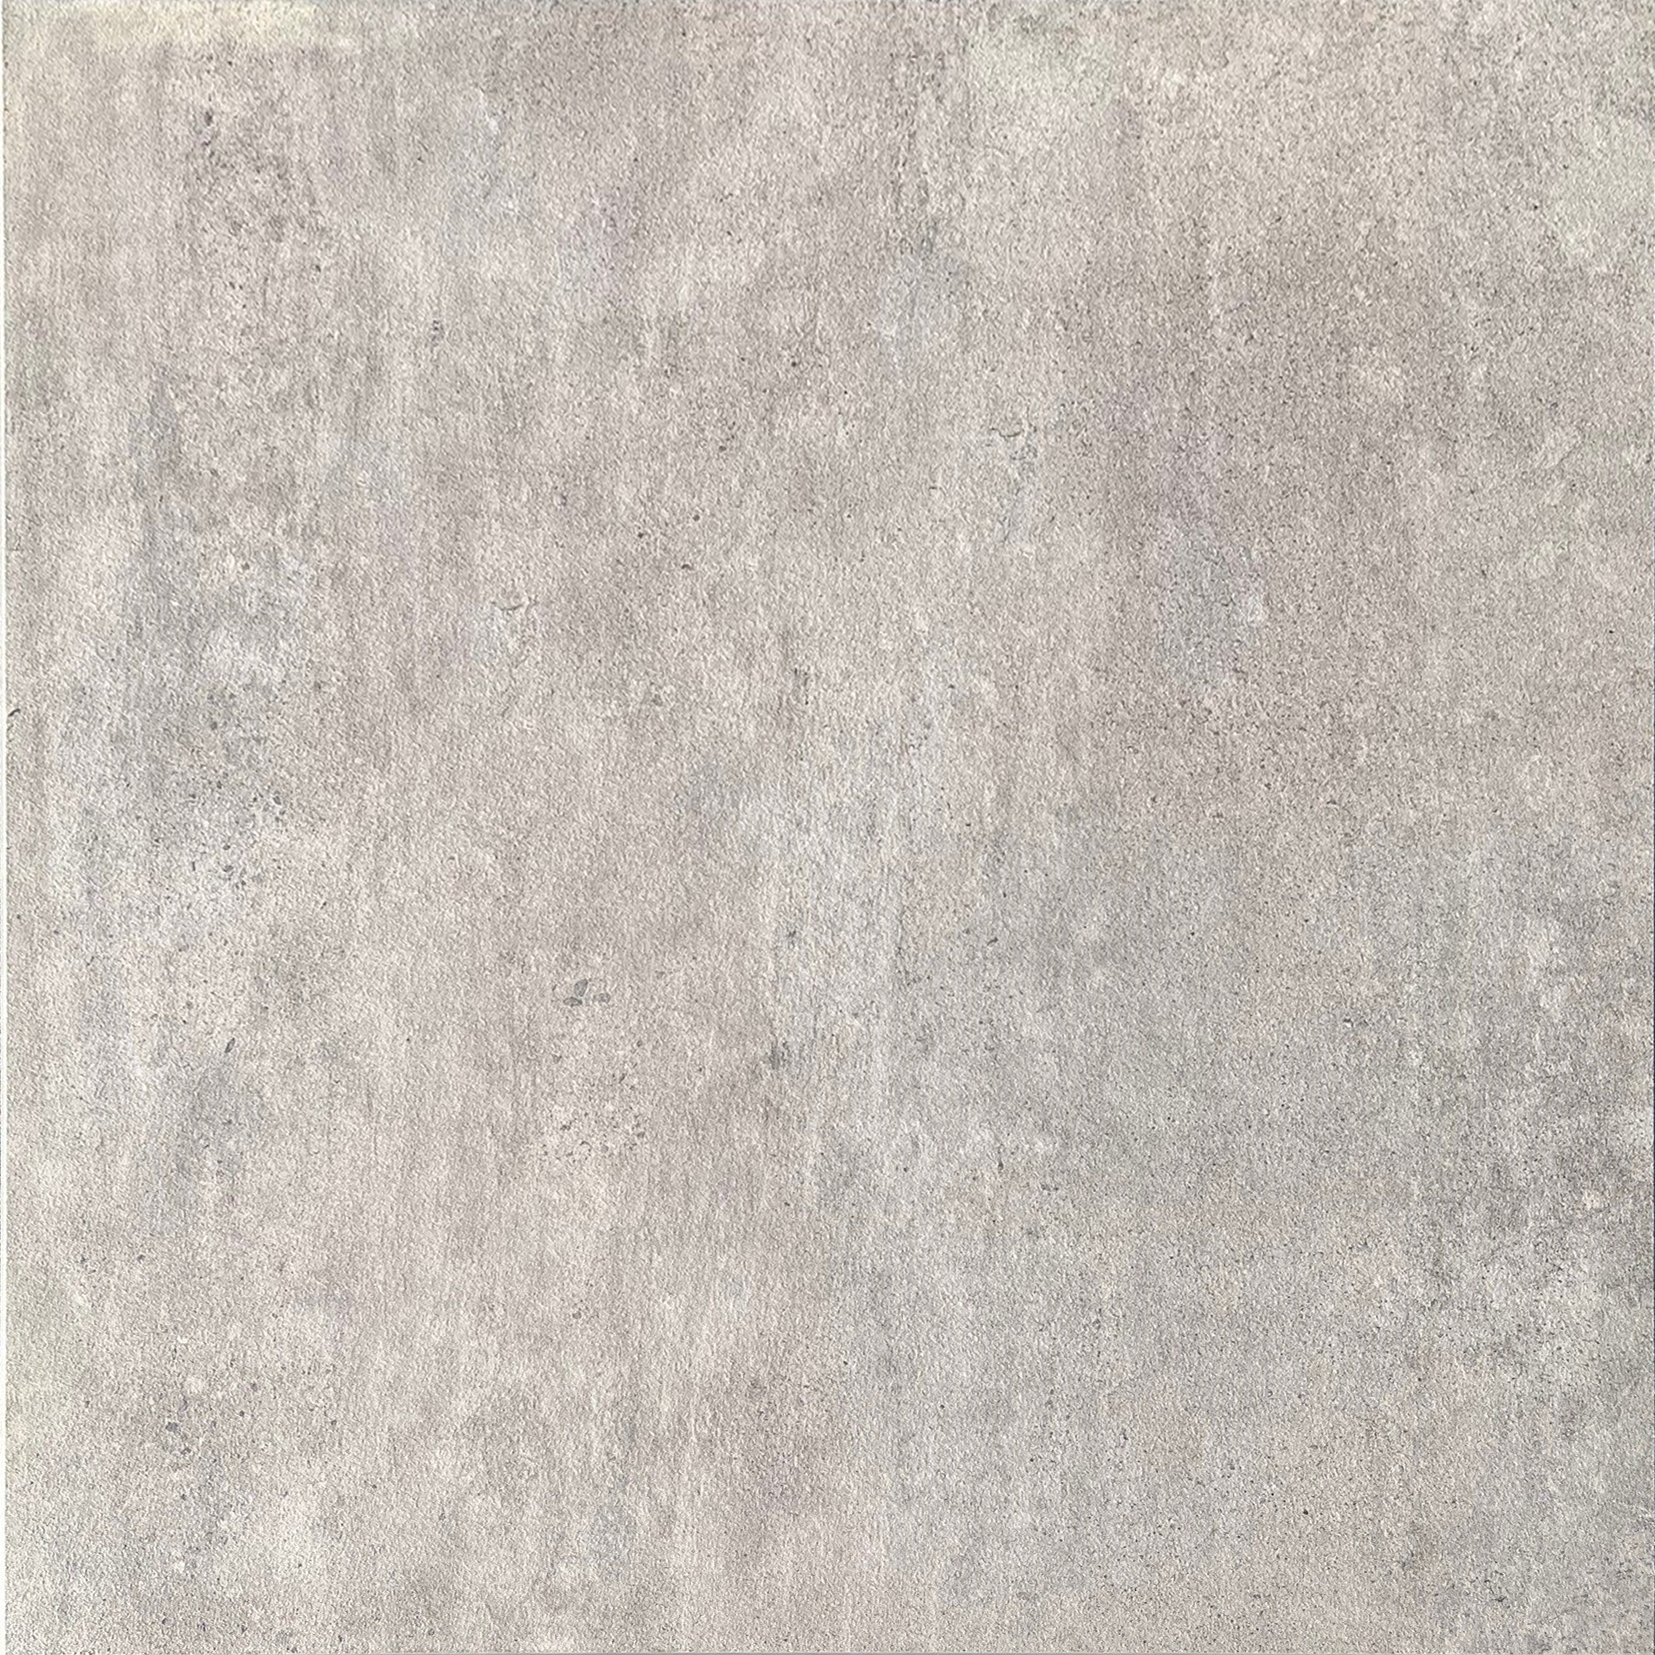 Floor tiles grey